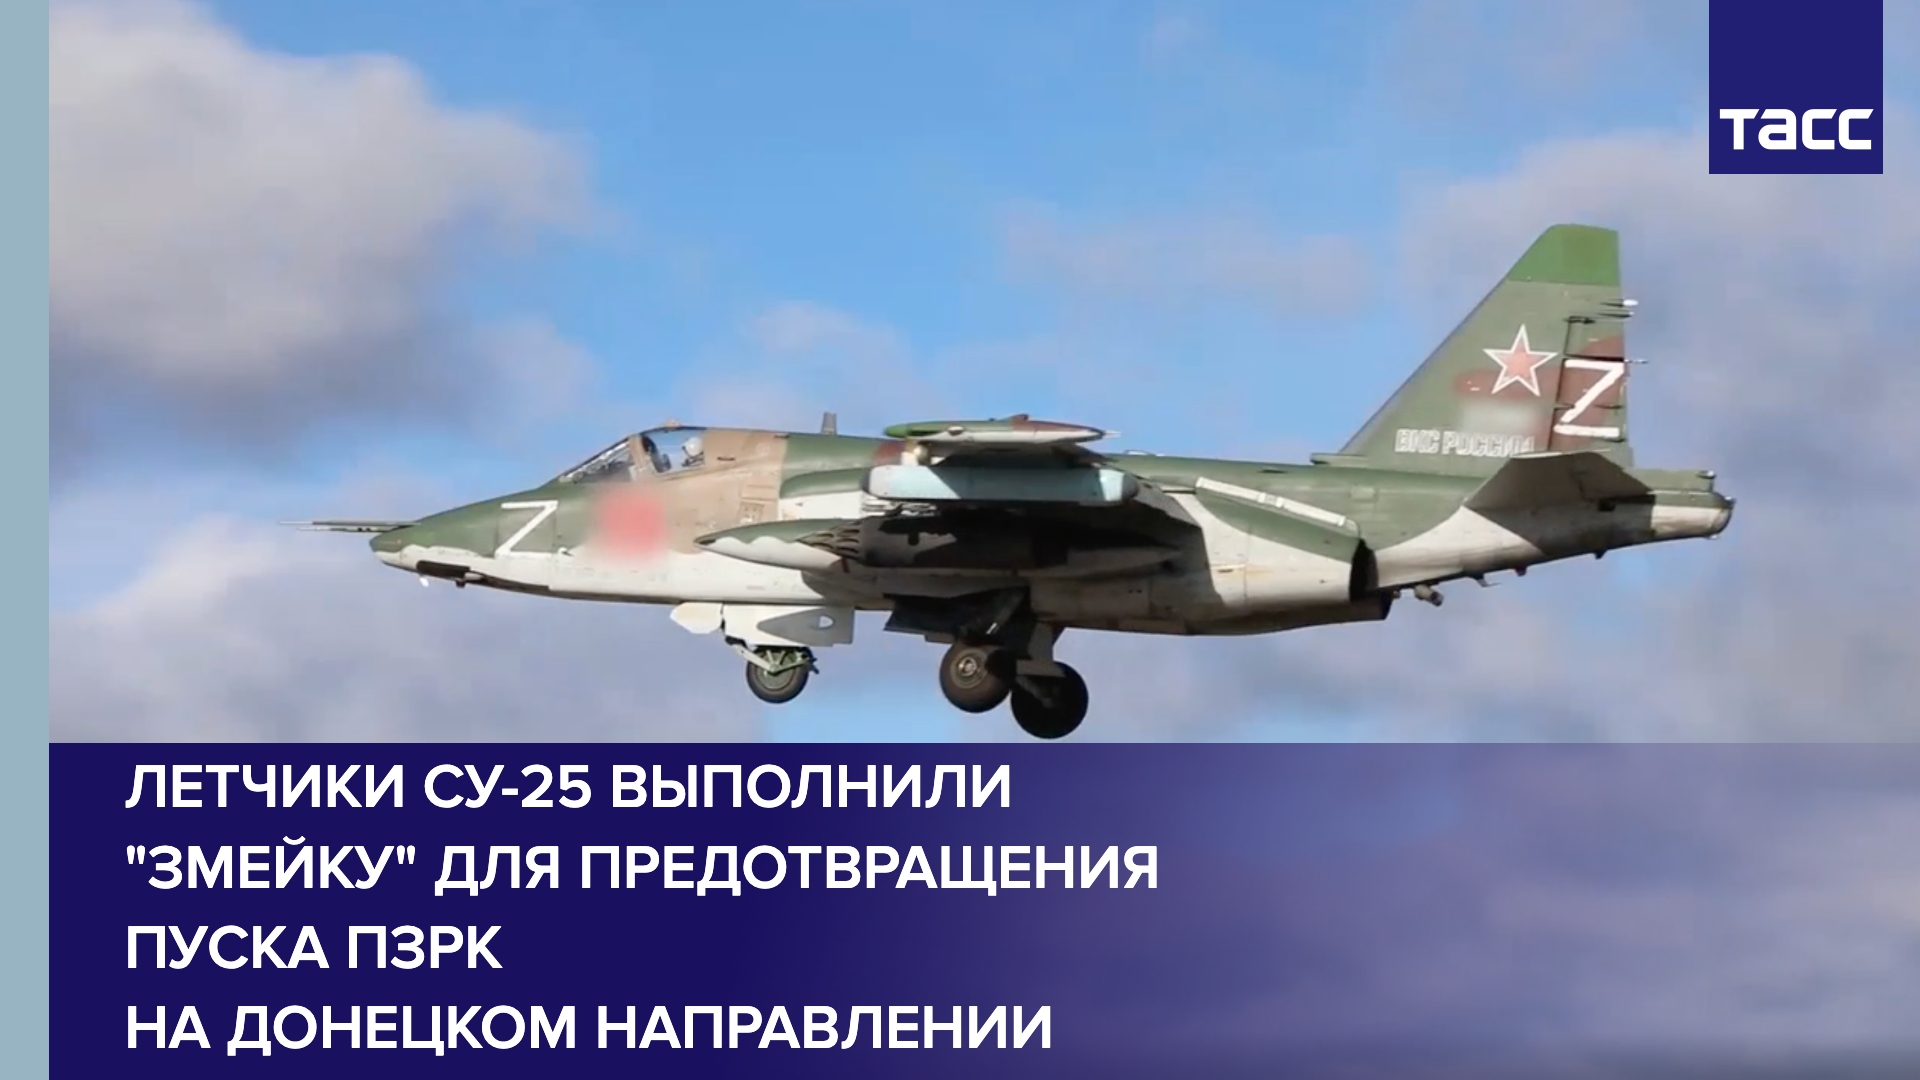 Летчики Су-25 выполнили "змейку" для предотвращения пуска ПЗРК на донецком направлении